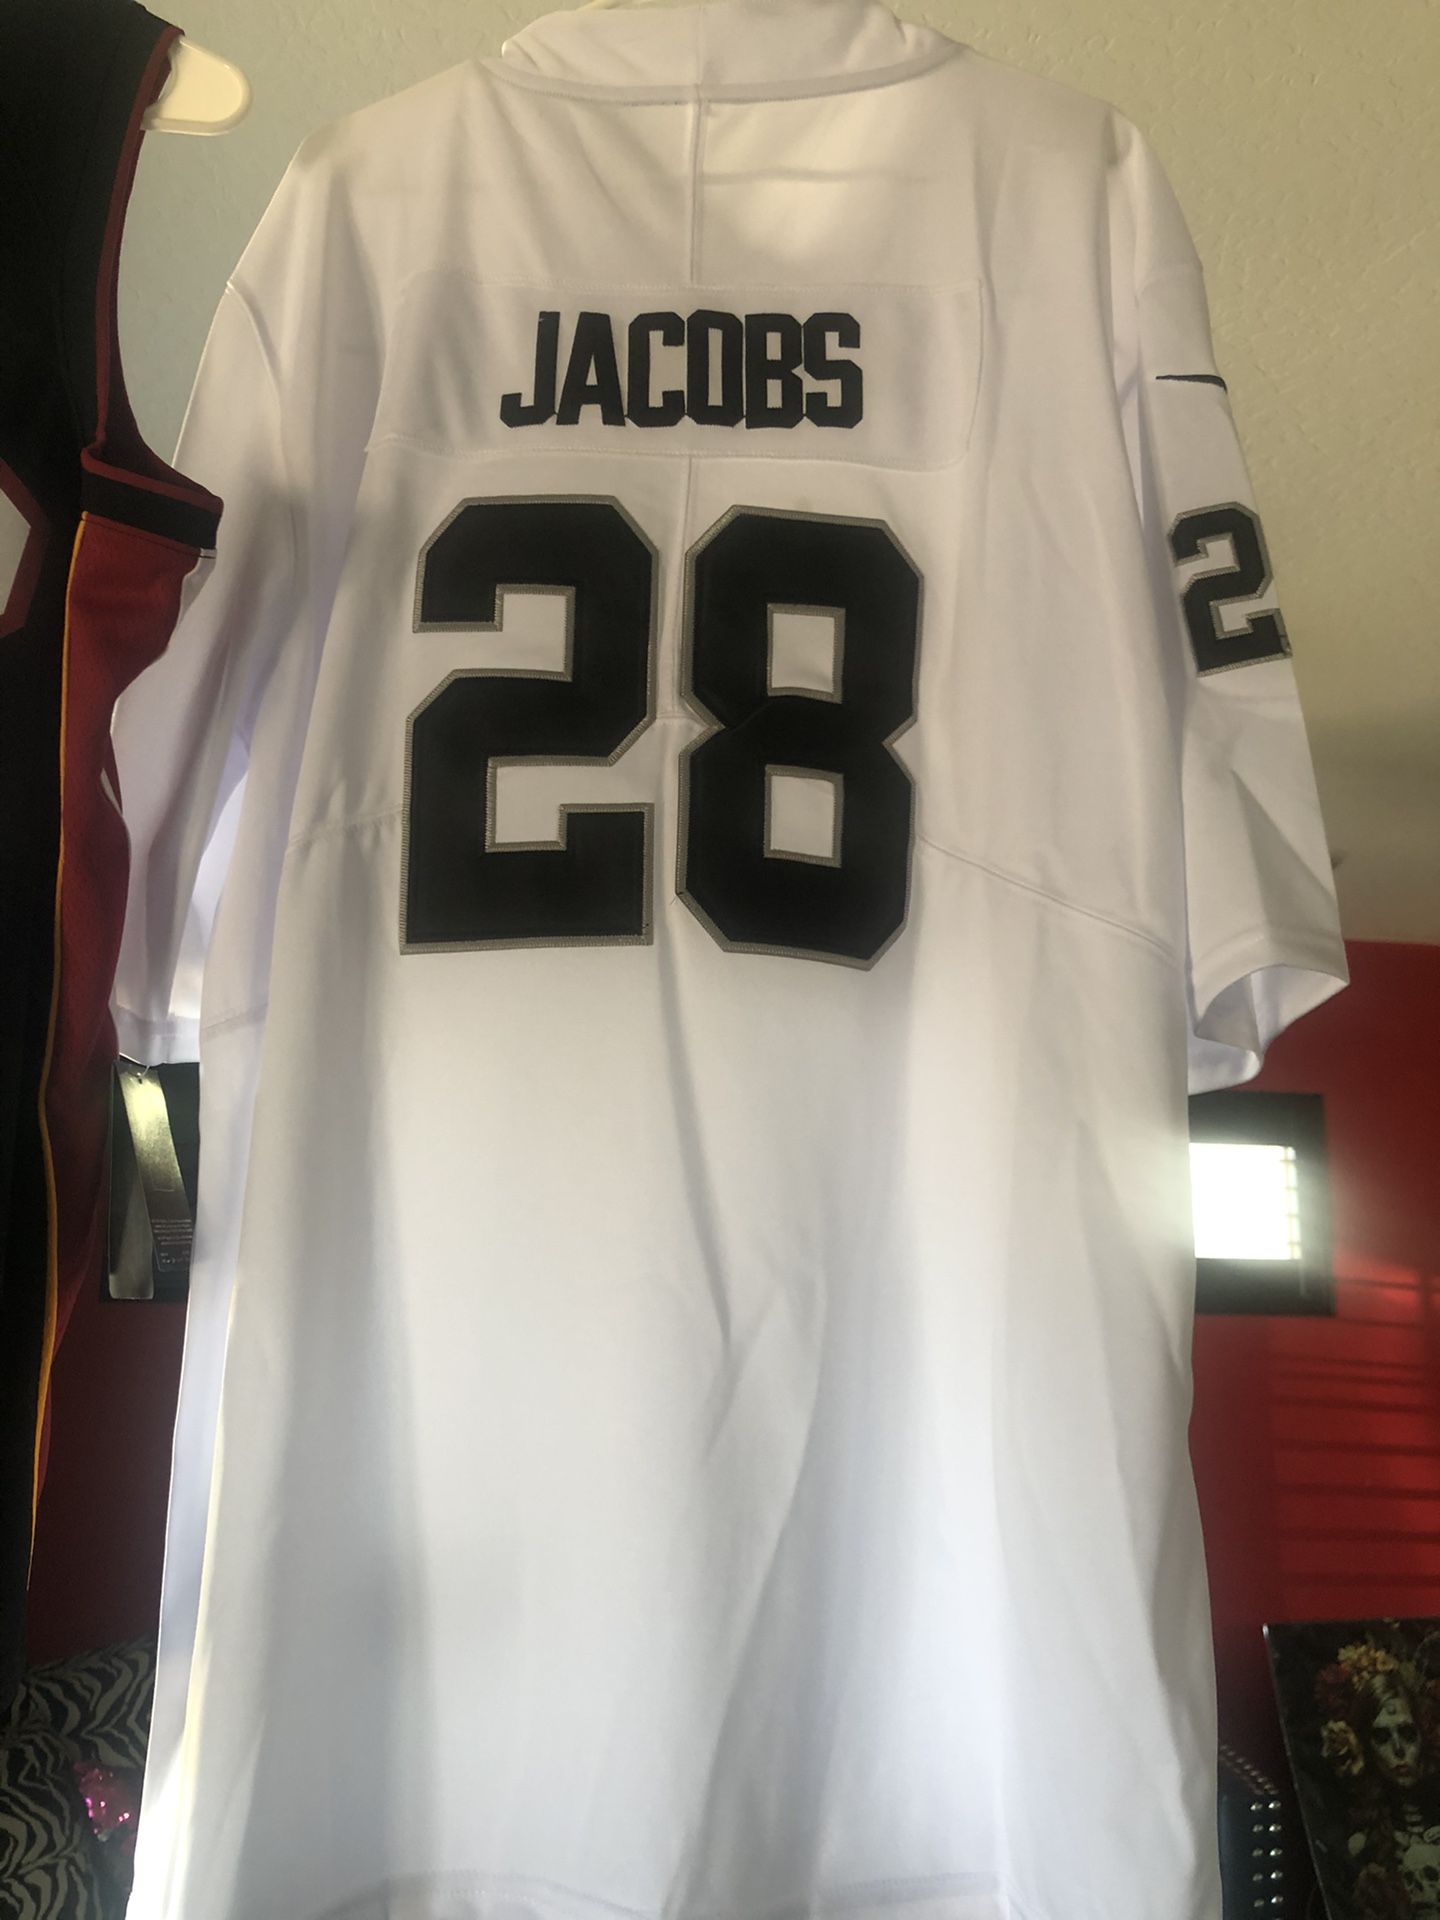 Josh Jacobs jersey, Raiders jersey for Sale in Phoenix, AZ - OfferUp